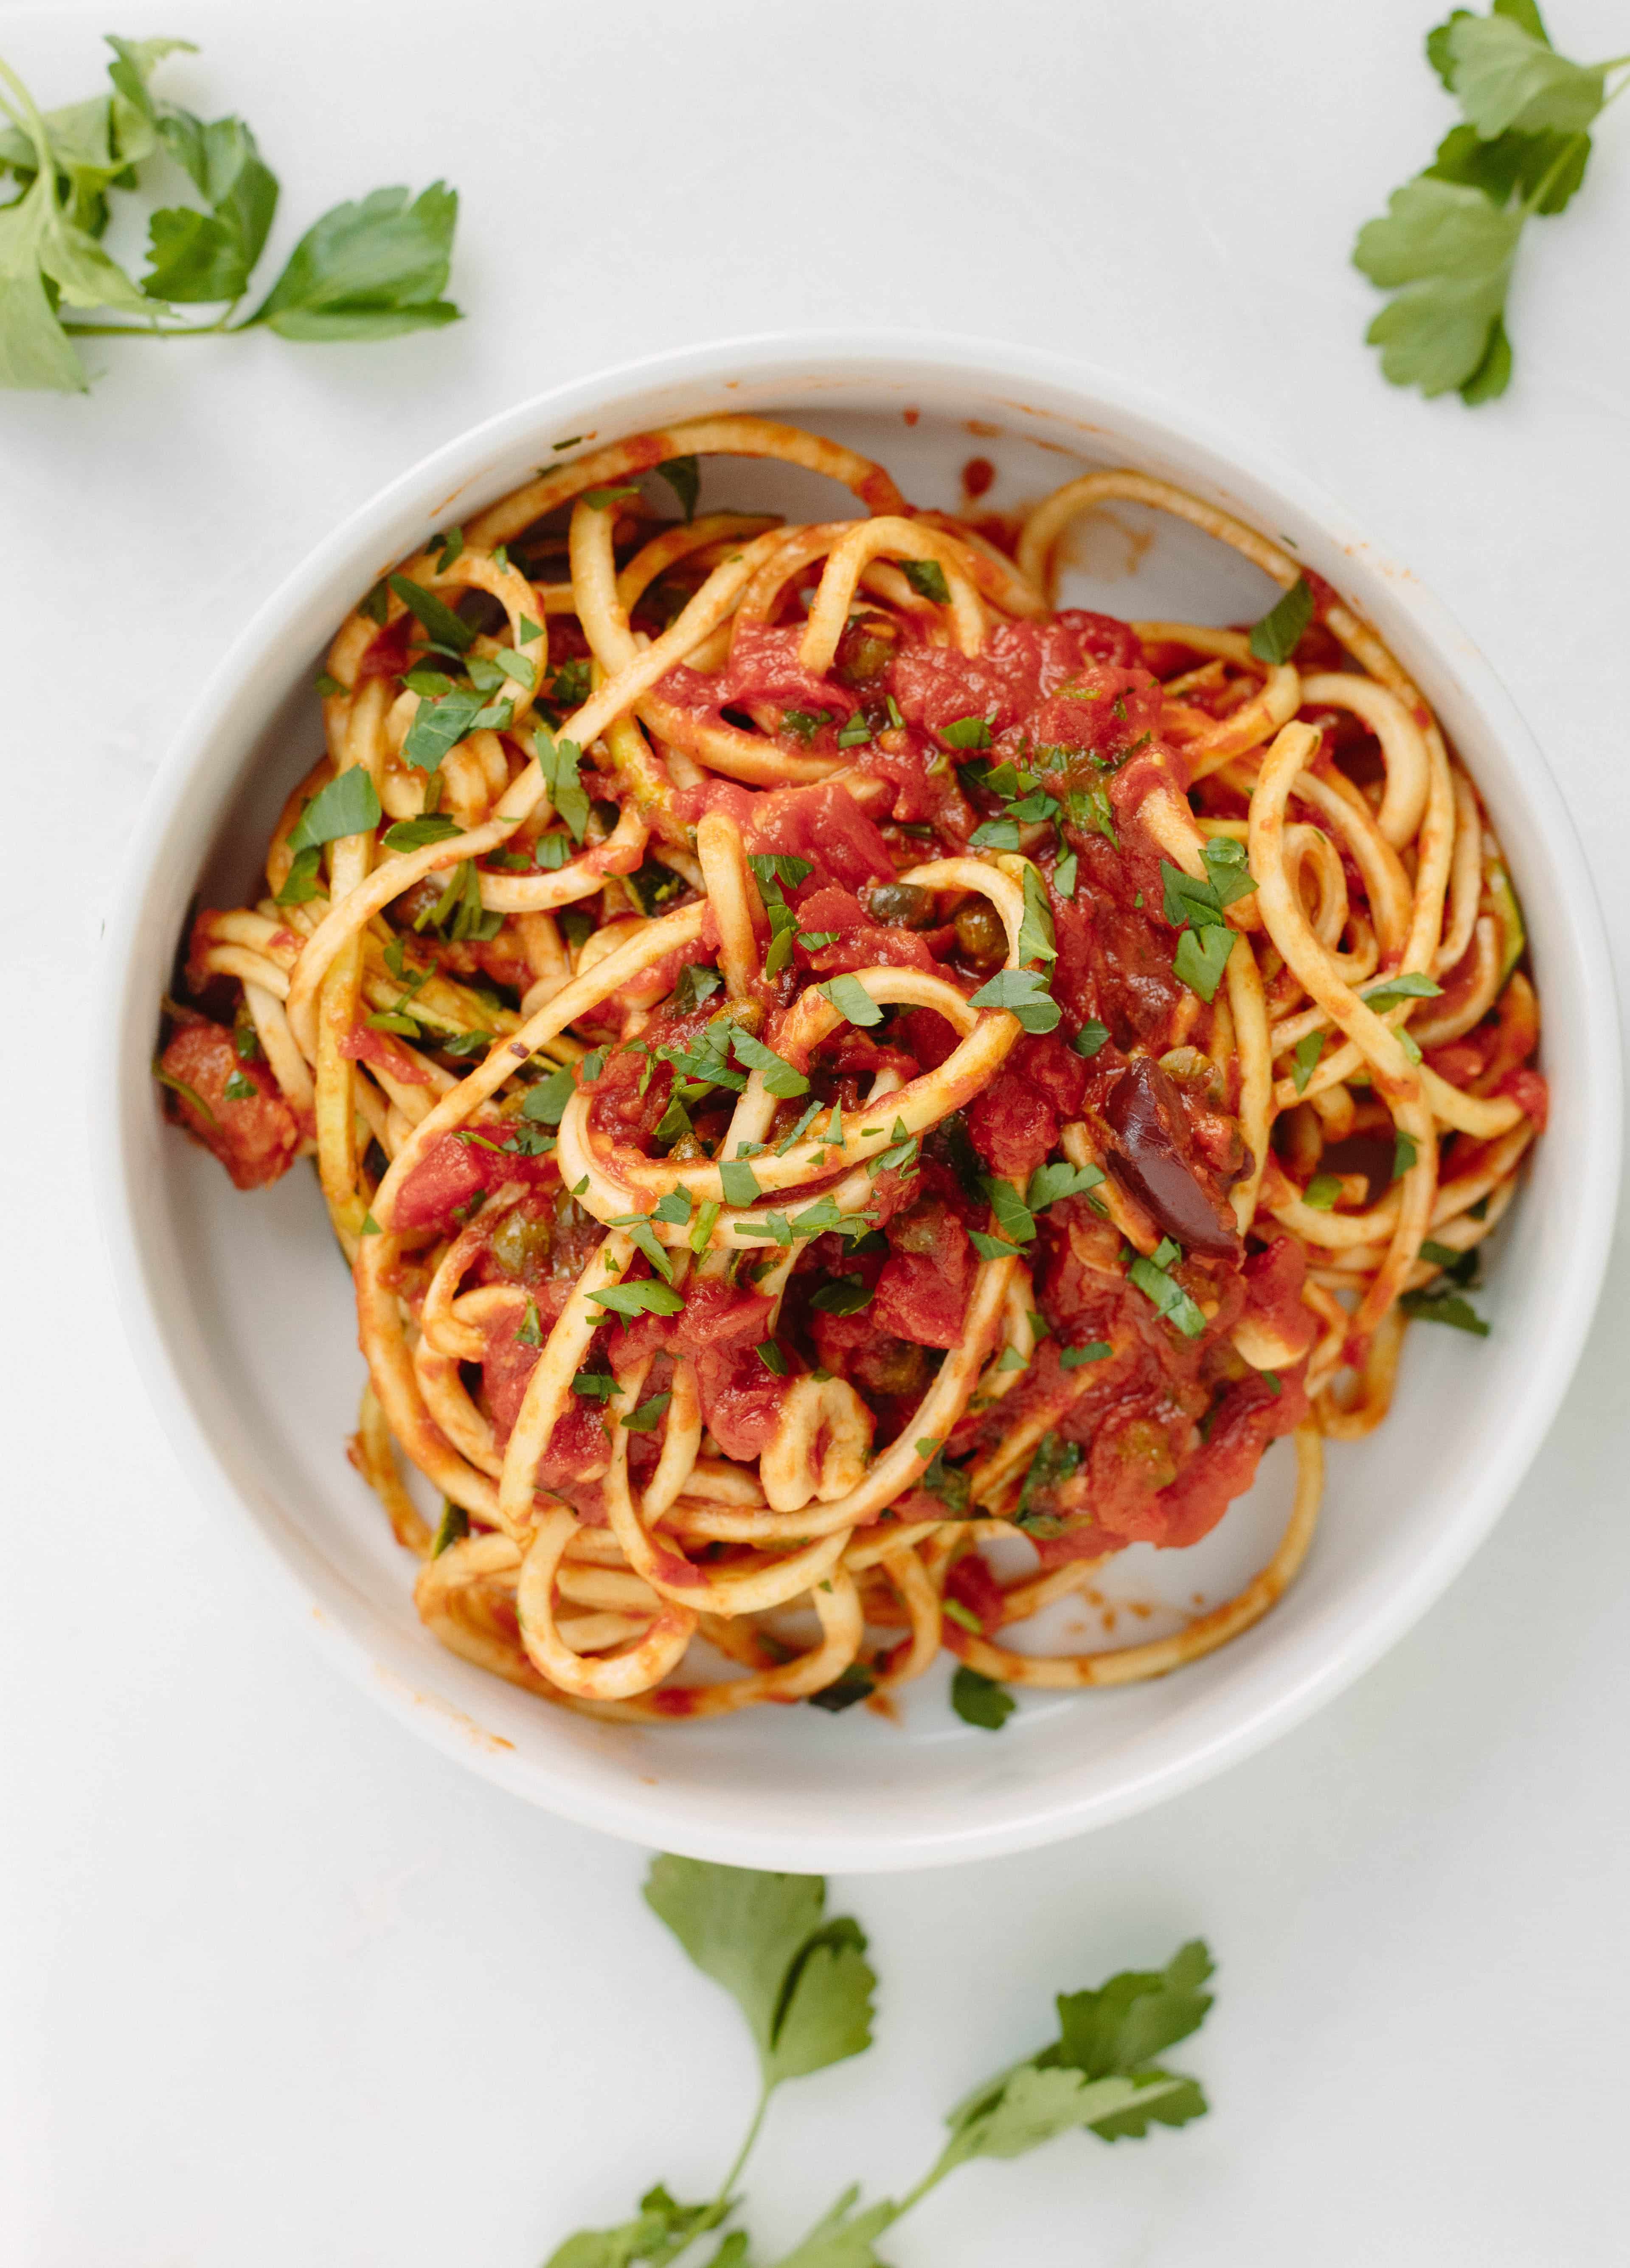 Inspiralized: Vegan Zucchini Spaghetti Puttanesca